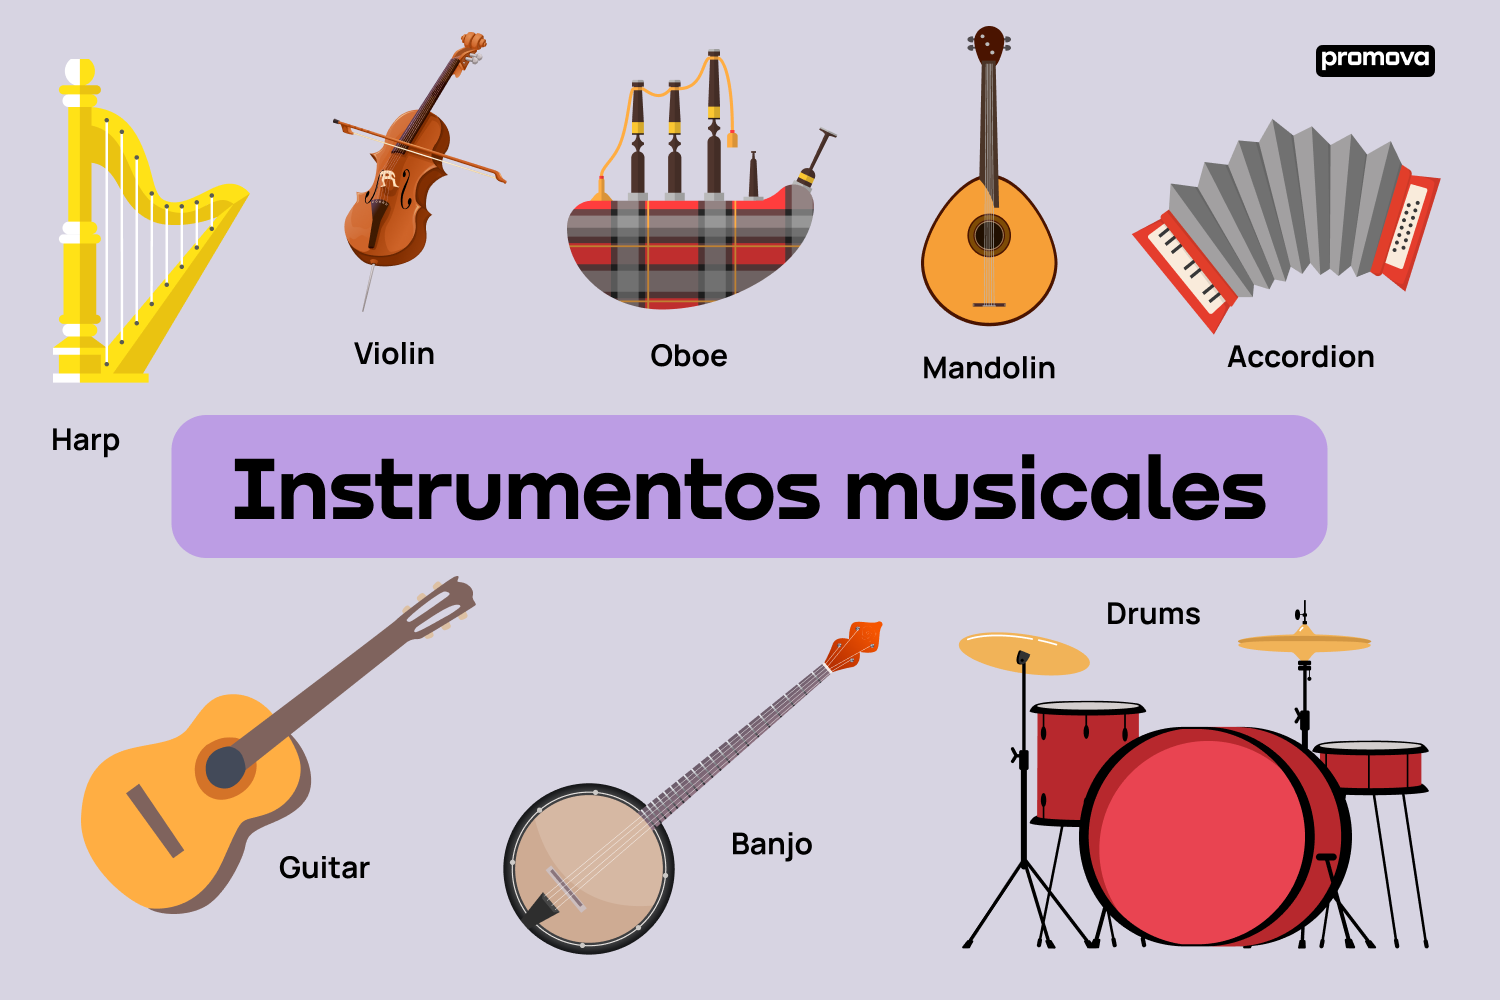 Explorando la armonía: Vocabulario de instrumentos musicales en inglés